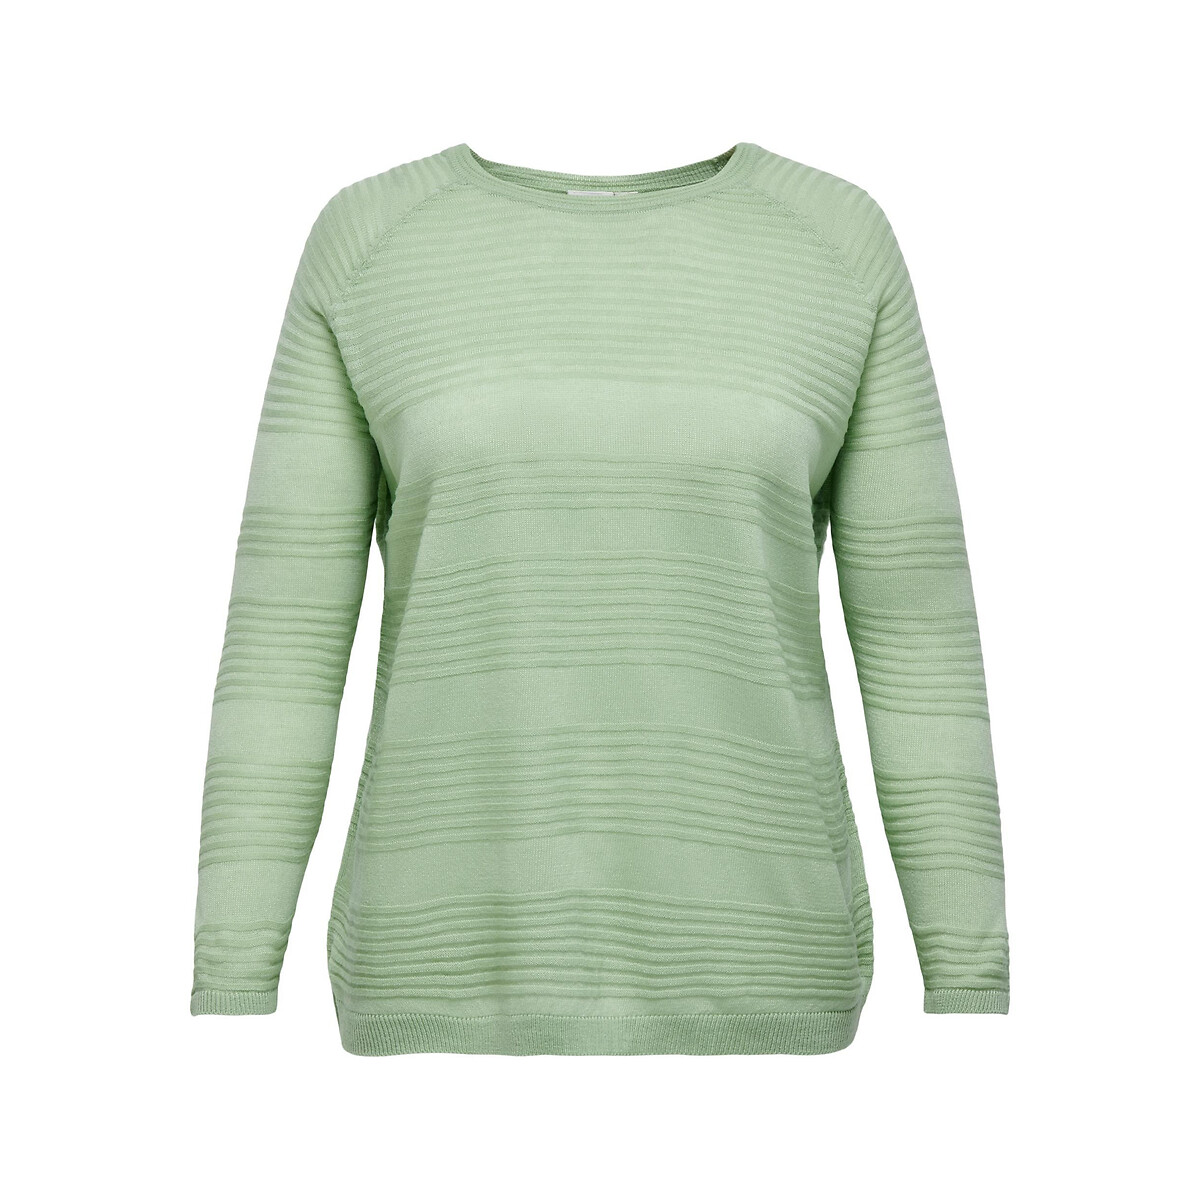 Пуловер из тонкого трикотажа круглый вырез 46/48 (FR) - 52/54 (RUS) зеленый